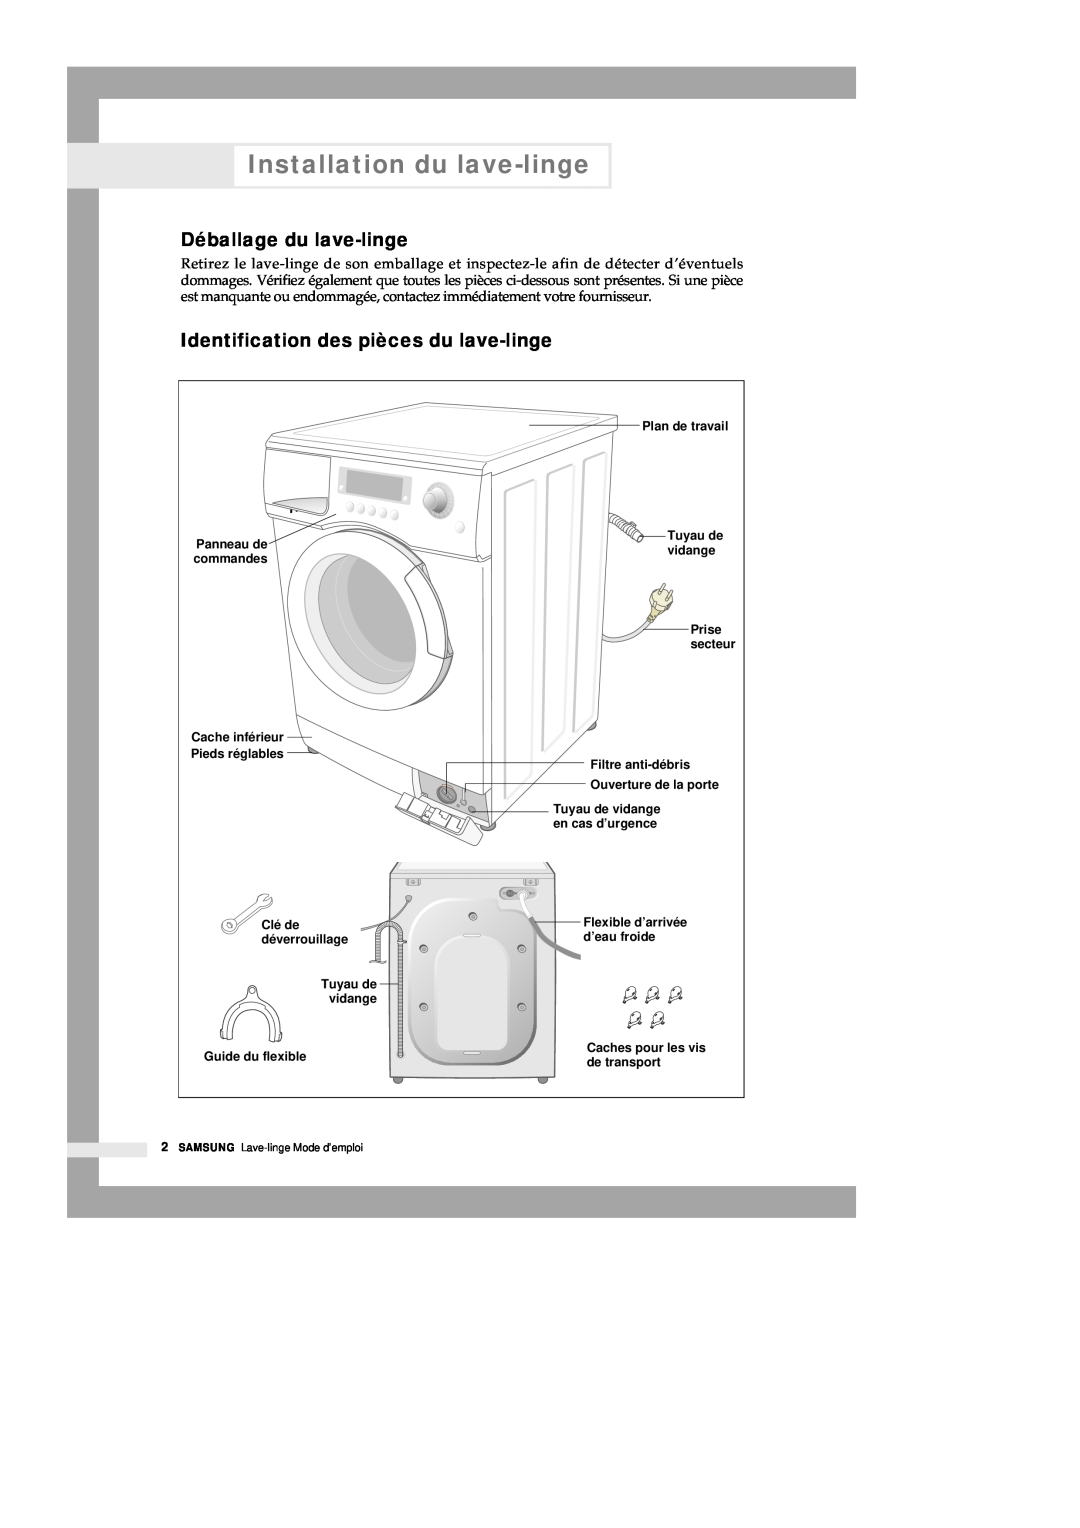 Samsung Q1435VGW1/YLE manual Installation du lave-linge, Déballage du lave-linge, Identification des pièces du lave-linge 